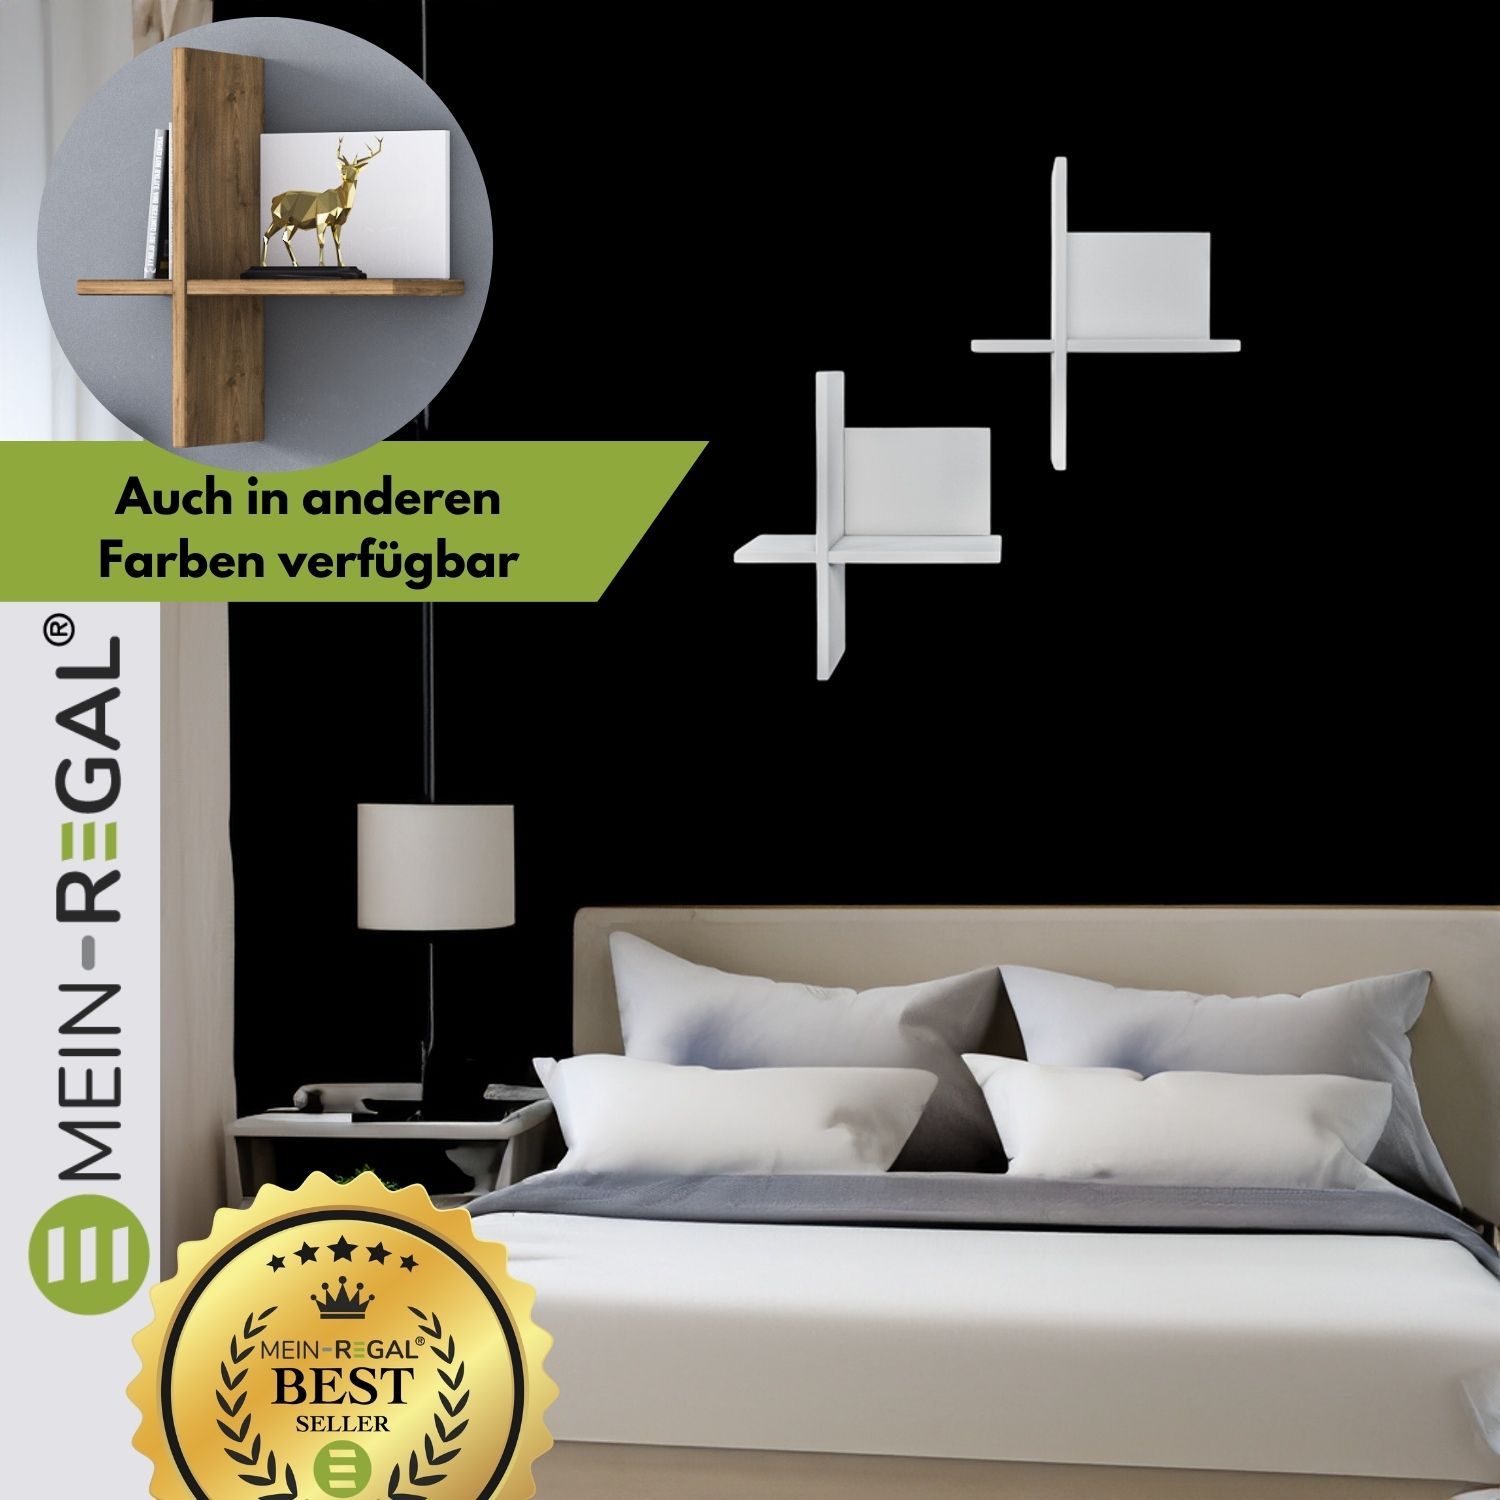 Wandregal Brick Weiß im Schlafzimmer hängt an schwarzer Wand über einem Doppelbett. Daneben ein Nachtschrank mit einer Stehlampe. Oben links ein Variantenbild von der Variante Natur/Weiß.